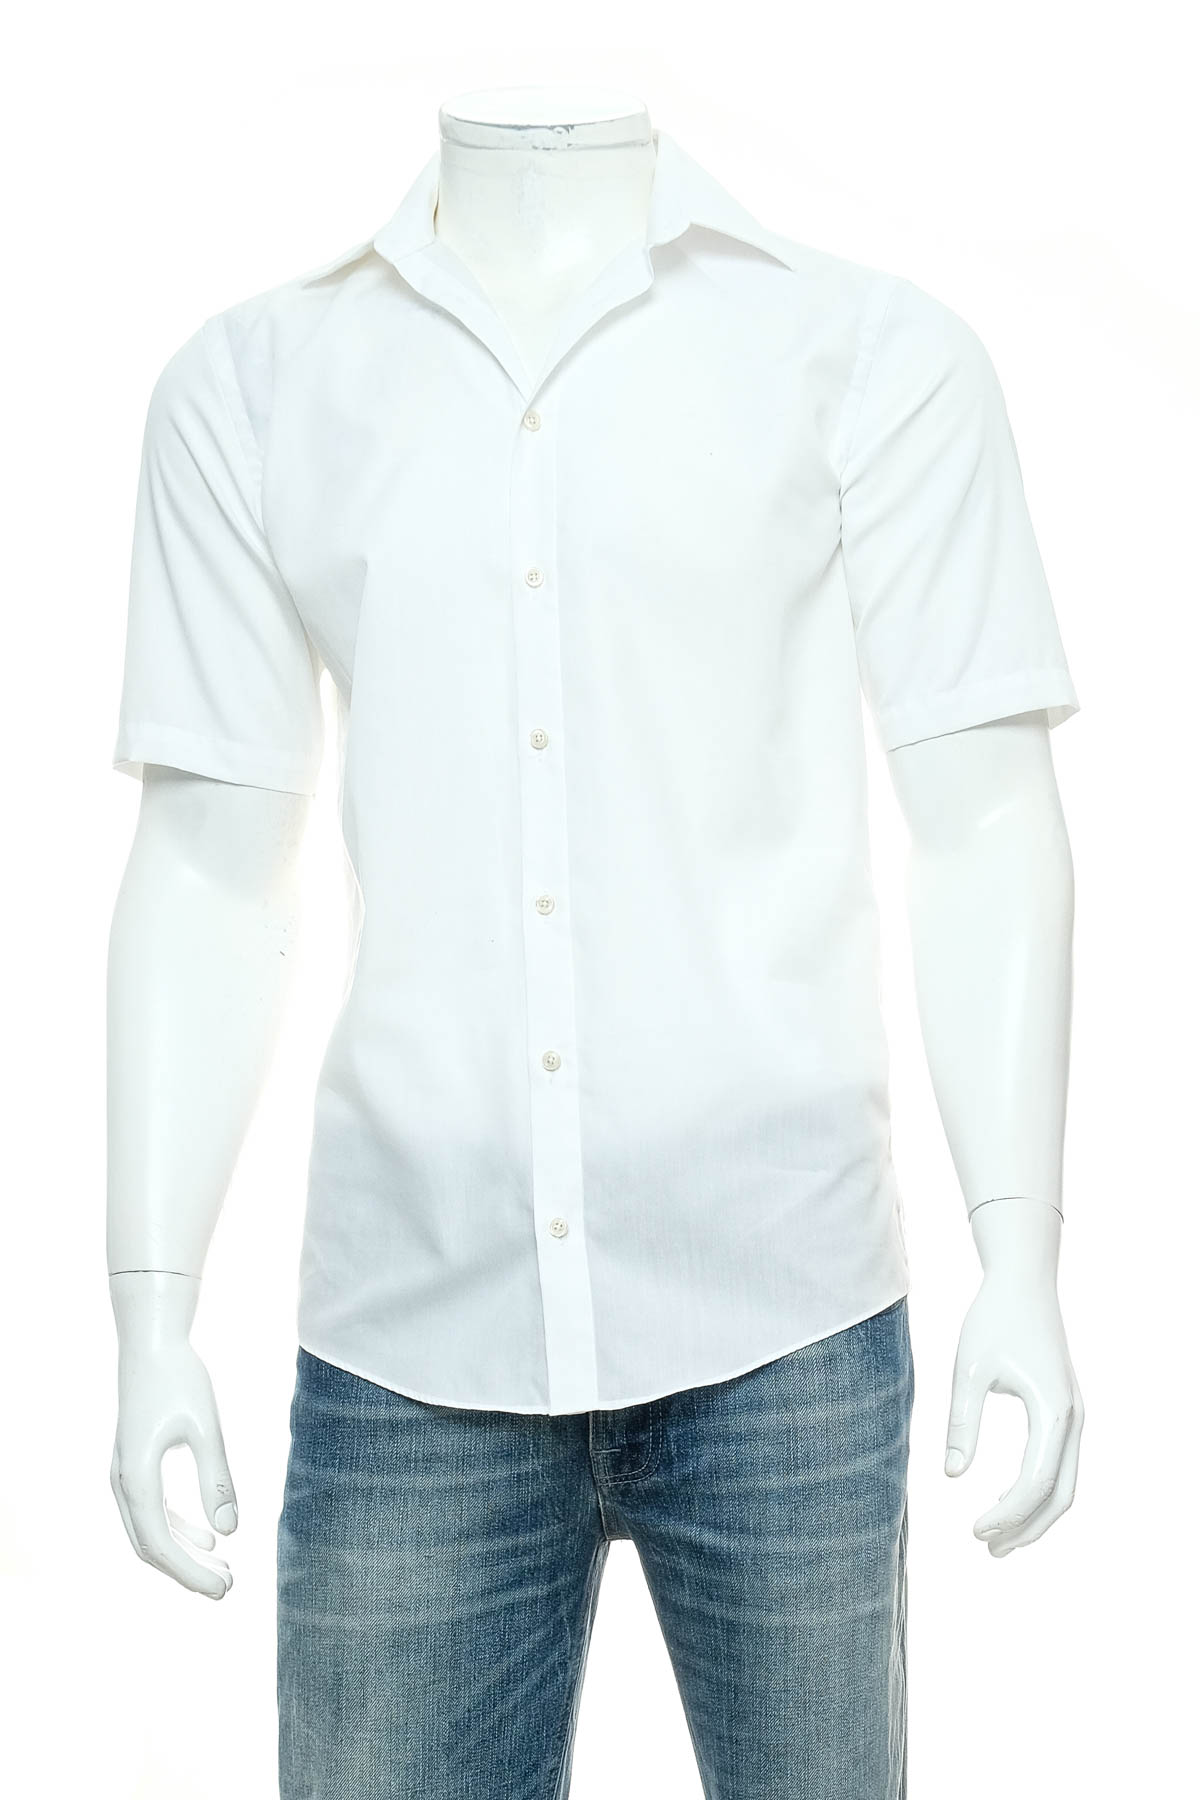 Ανδρικό πουκάμισο - Venti - 0